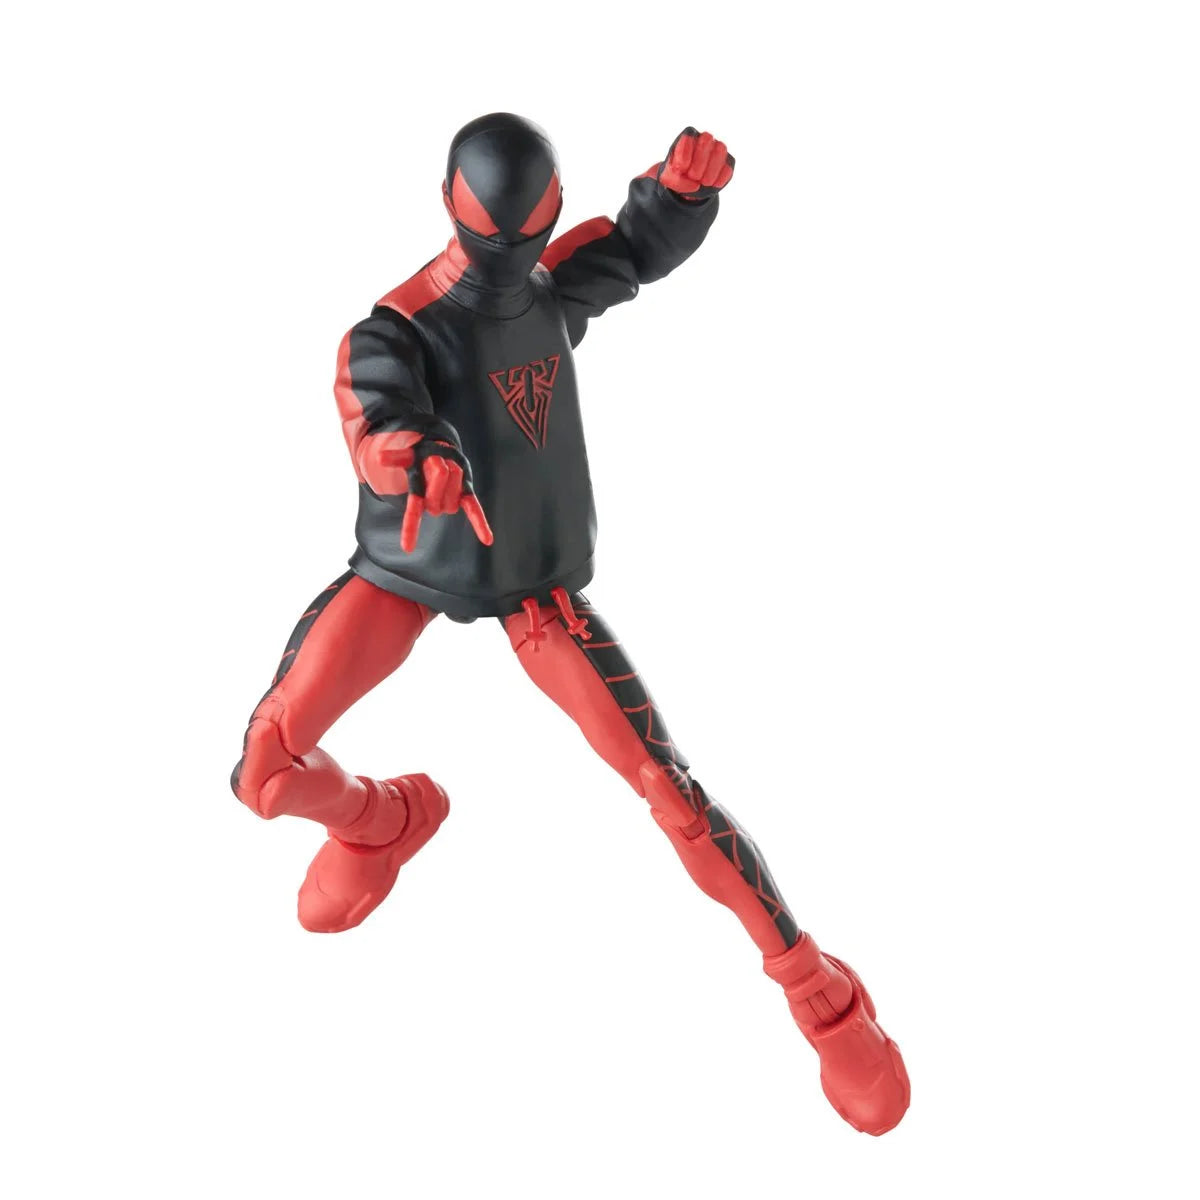 Marvel Legends Spider-Man - Miles Morales Spider-Man Action Figure Toy